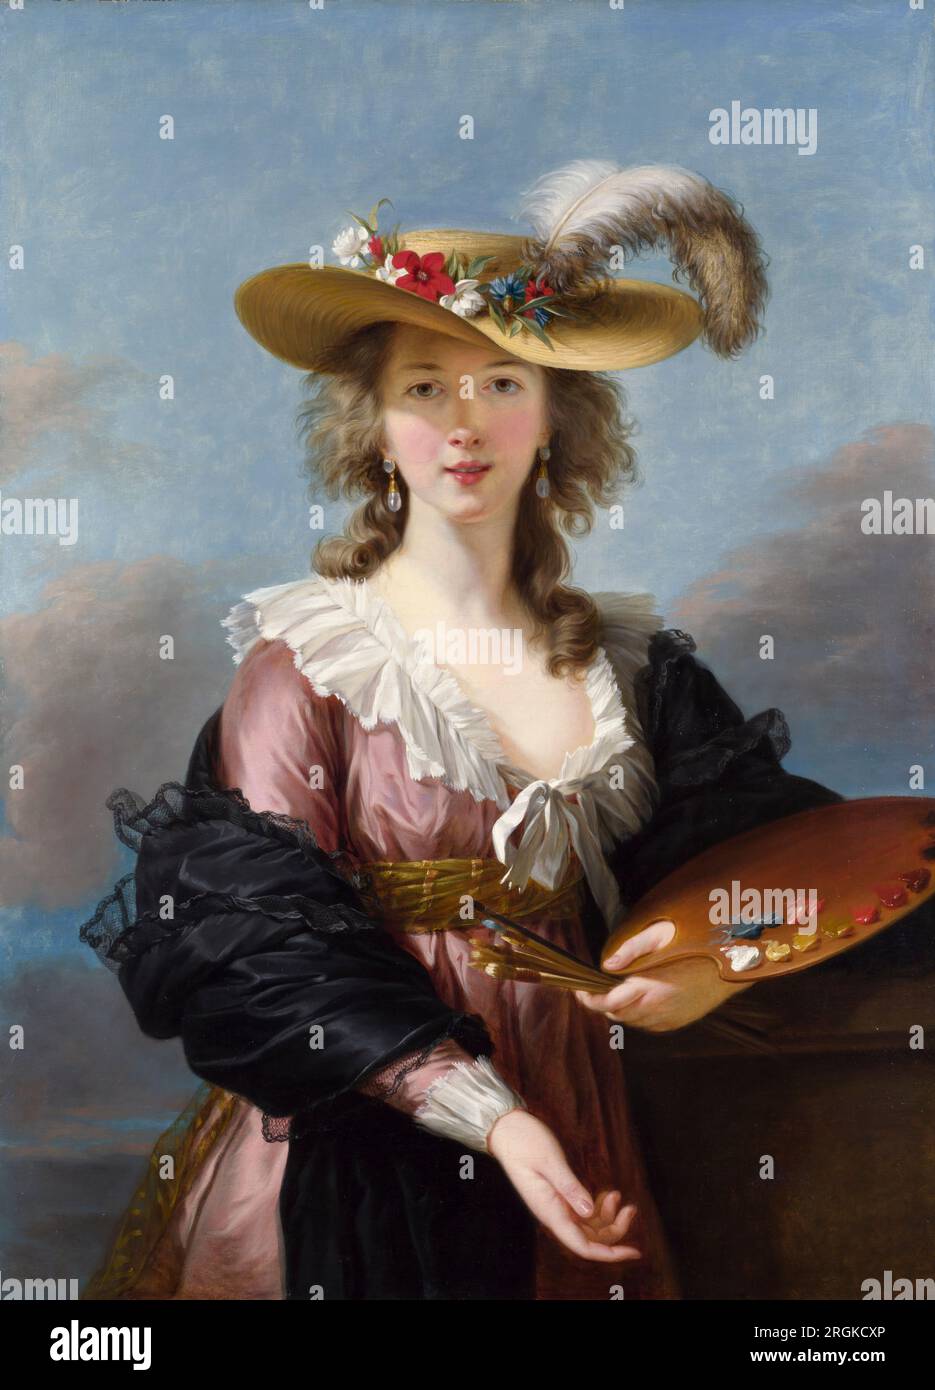 Elisabeth Vigee le Brun (1755-1842), Autoportrait au chapeau de paille, peinture à l'huile sur toile, après 1782 Banque D'Images